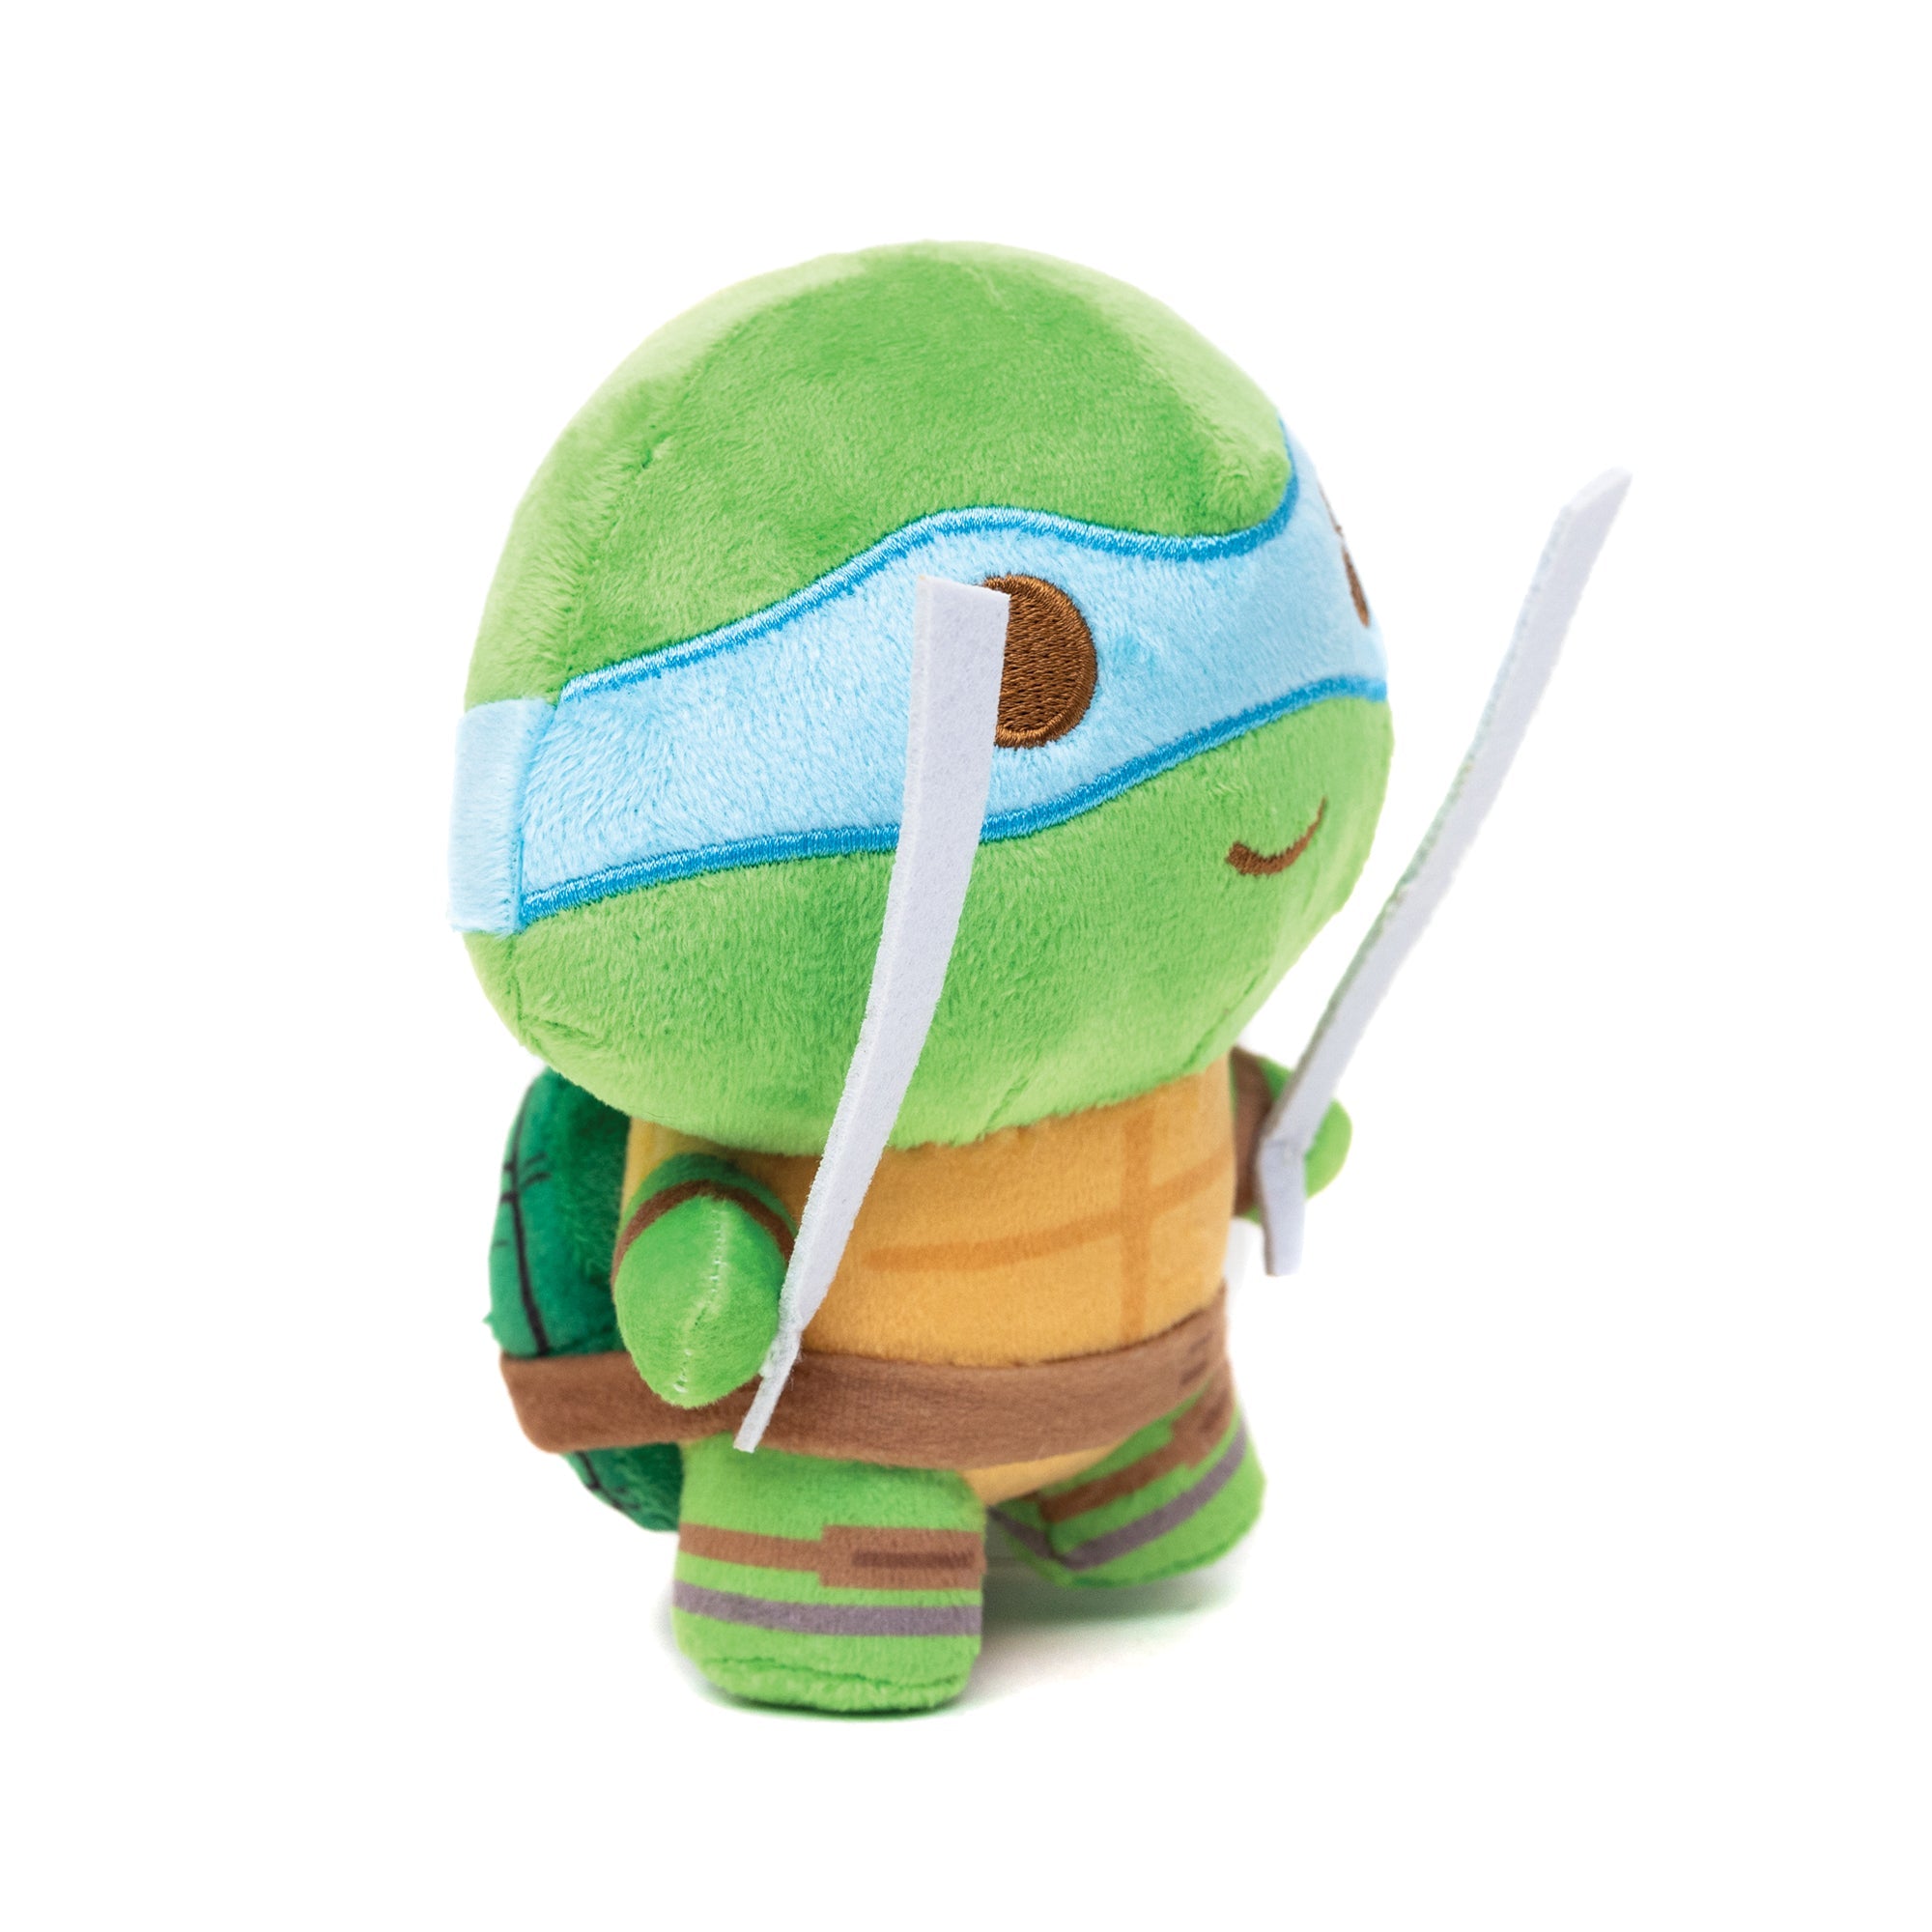 Teenage Mutant Ninja Turtles Leonardo 9-Inch Plush